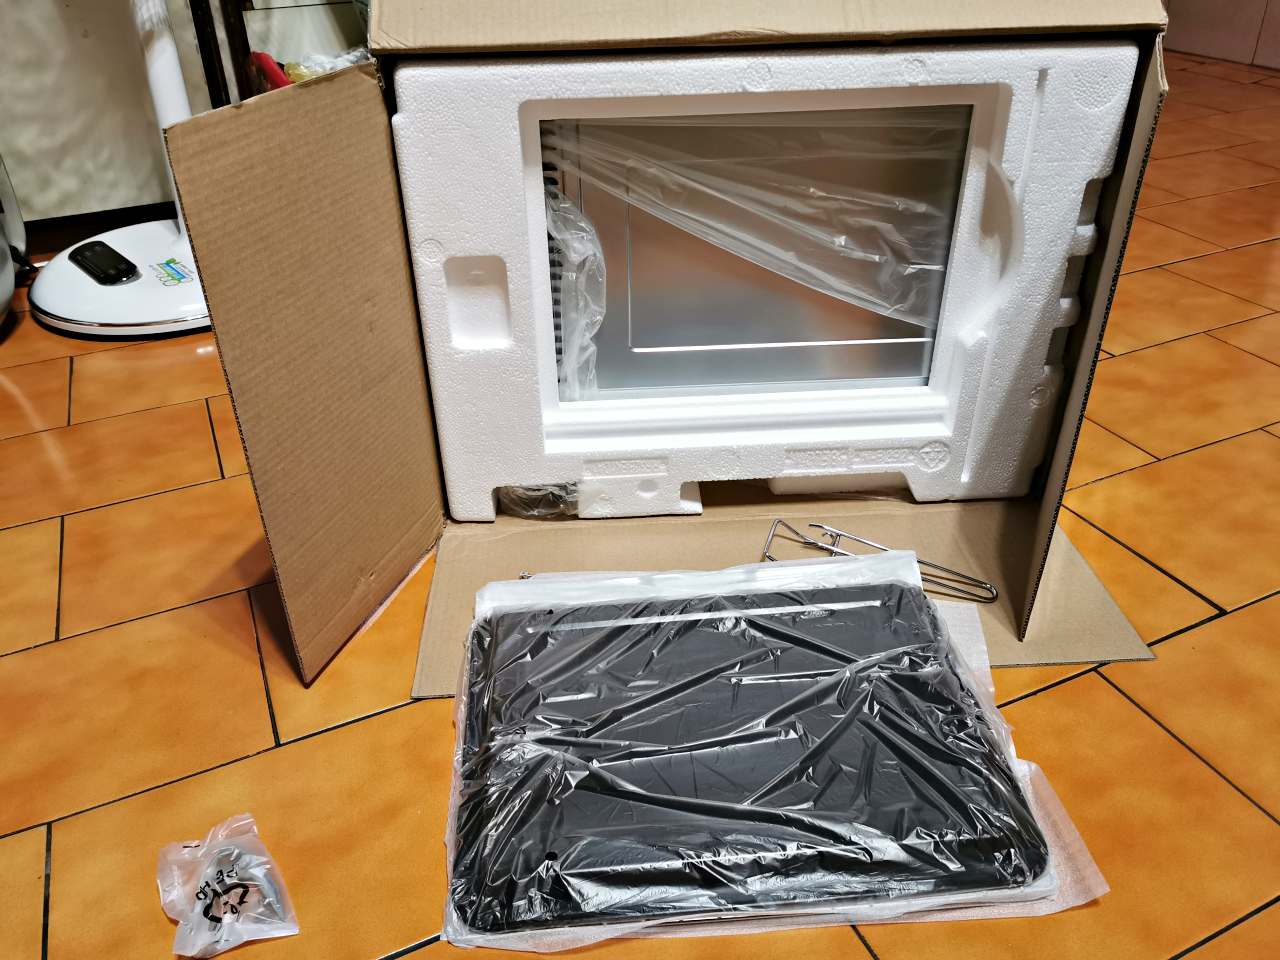 【開箱】Panasonic 國際牌32公升電烤箱(NB-H3203)使用心得